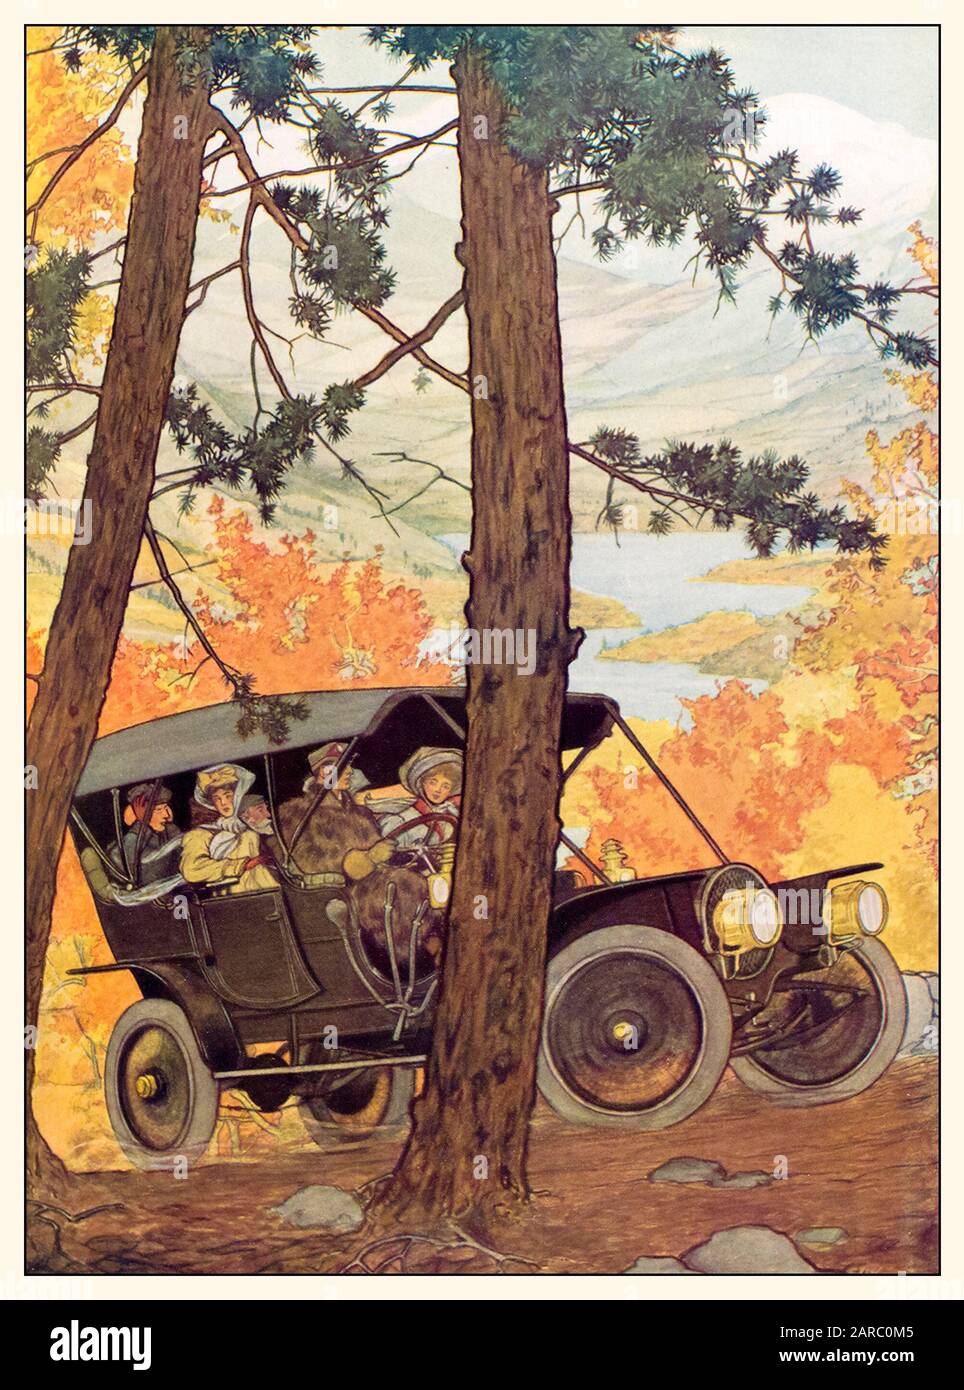 Conduite dans une voiture Franklin Vintage à travers les bois en automne, illustration promotionnelle, vers 1909 Banque D'Images